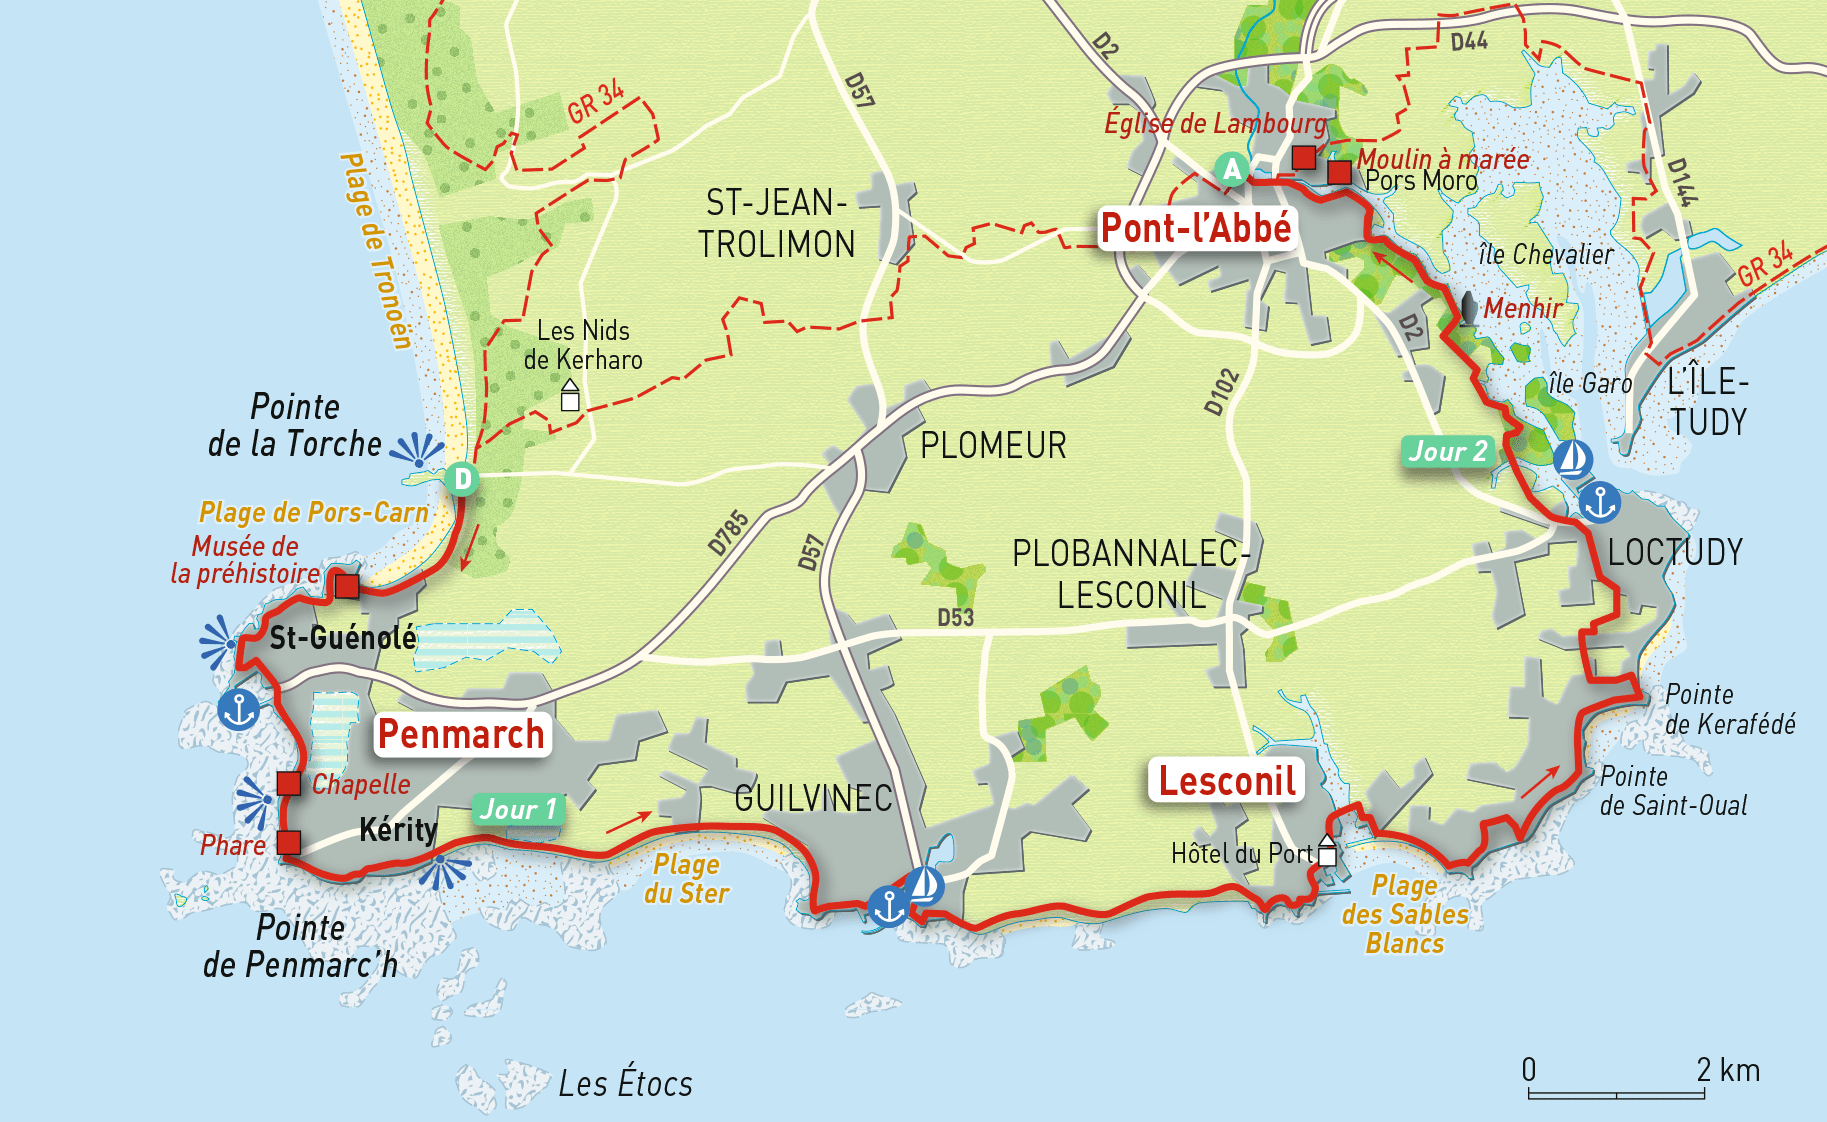 Carte IGN 0519, OT Topo-guide : La côte de Cornouaille (De la pointe du Raz aux Montagnes Noires)Bertrand de Brun - Afdec